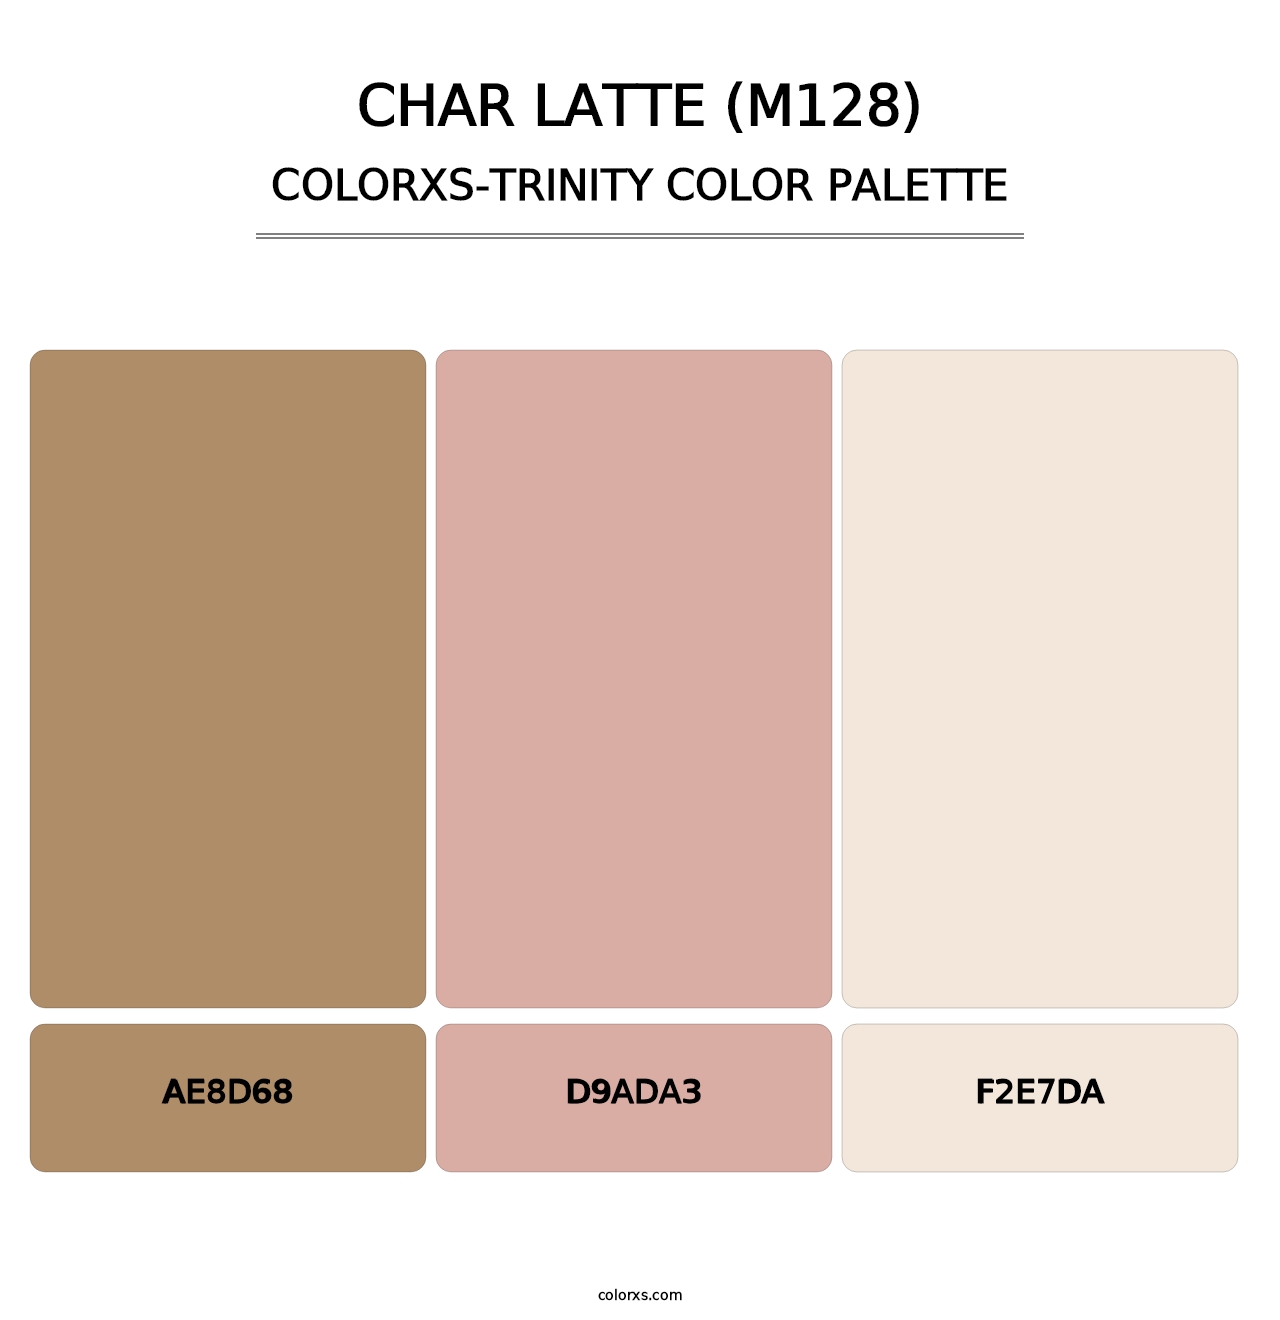 Char Latte (M128) - Colorxs Trinity Palette